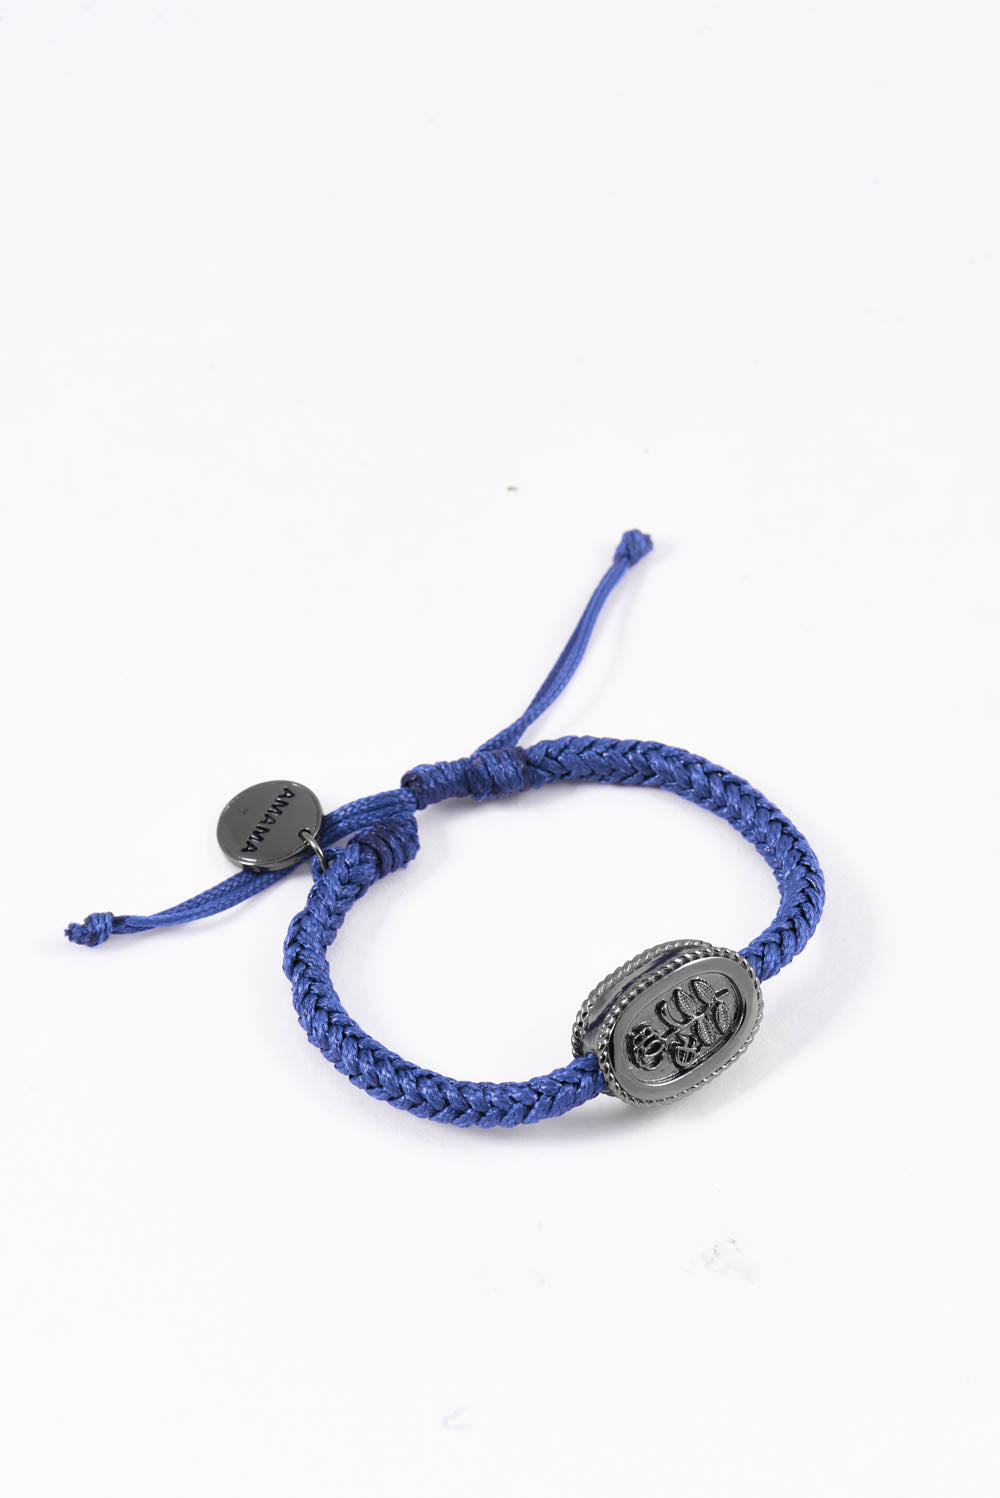 Amama,SubRosa Amulet Bracelet in Indigo Blue